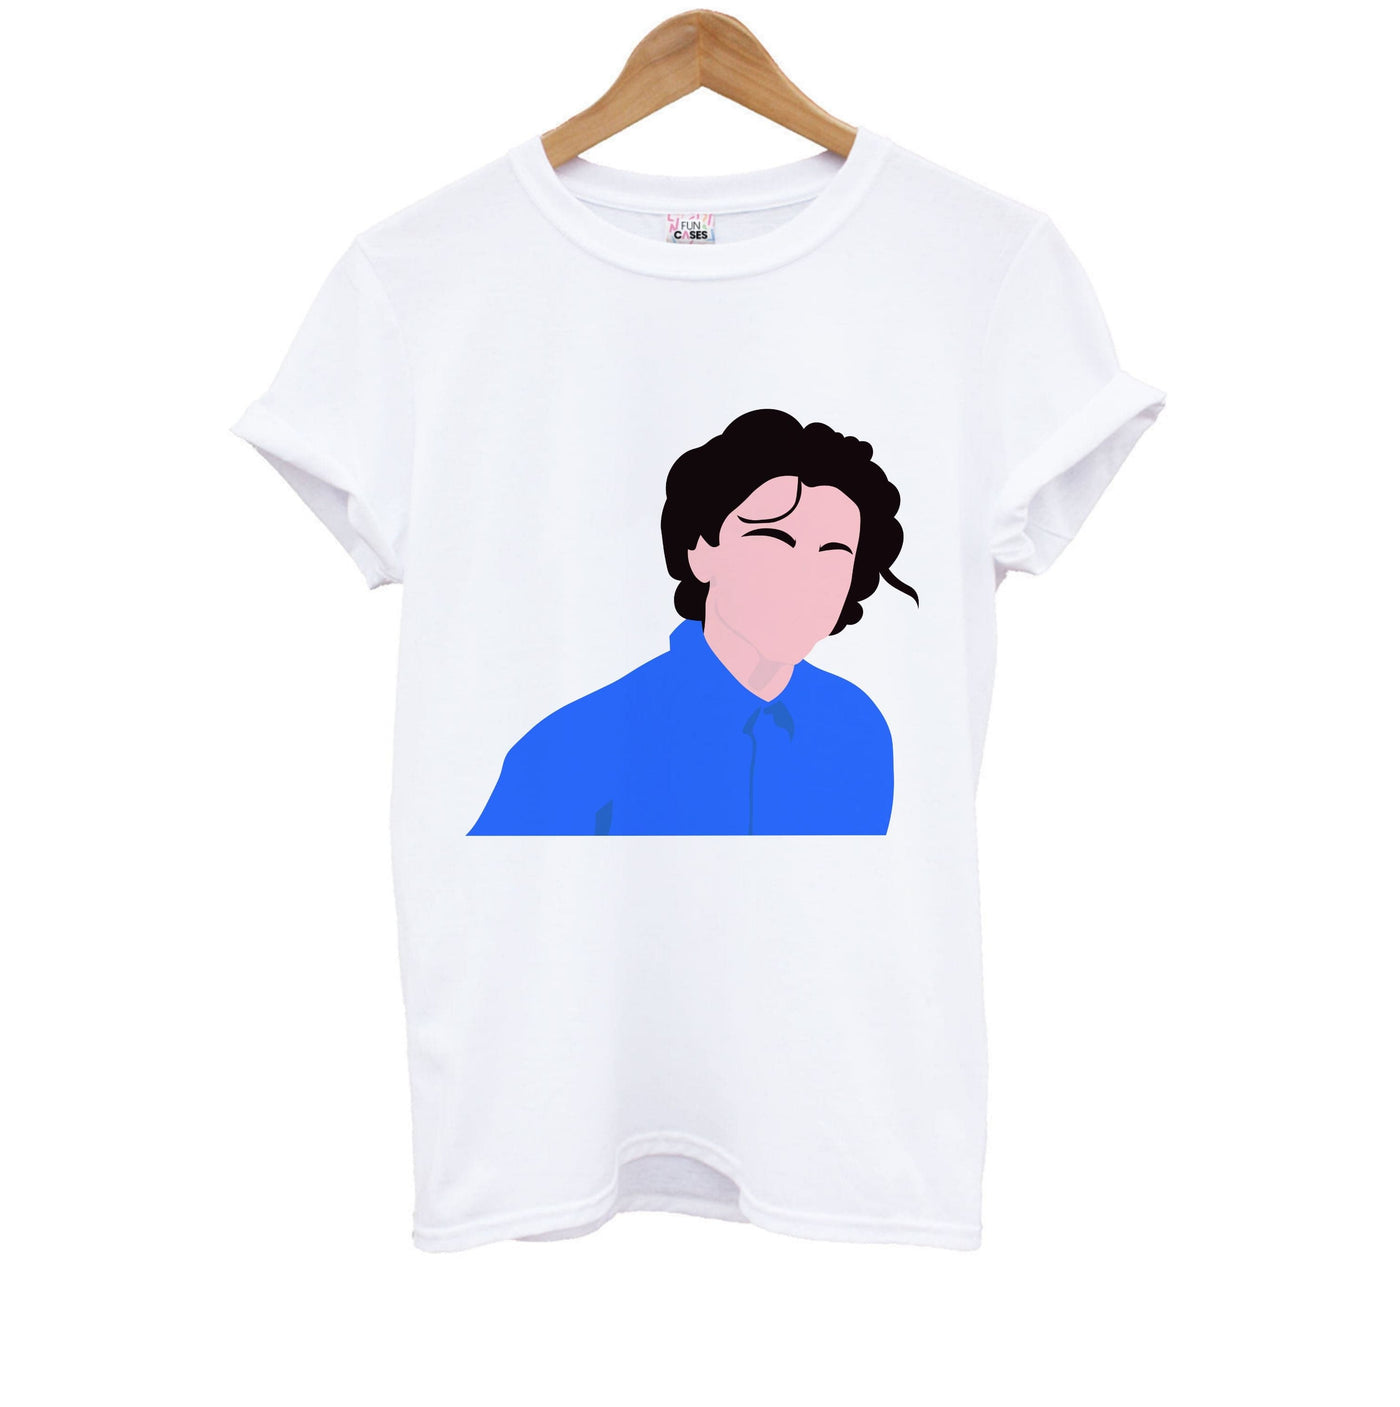 Blue Shirt - Timothée Chalamet Kids T-Shirt